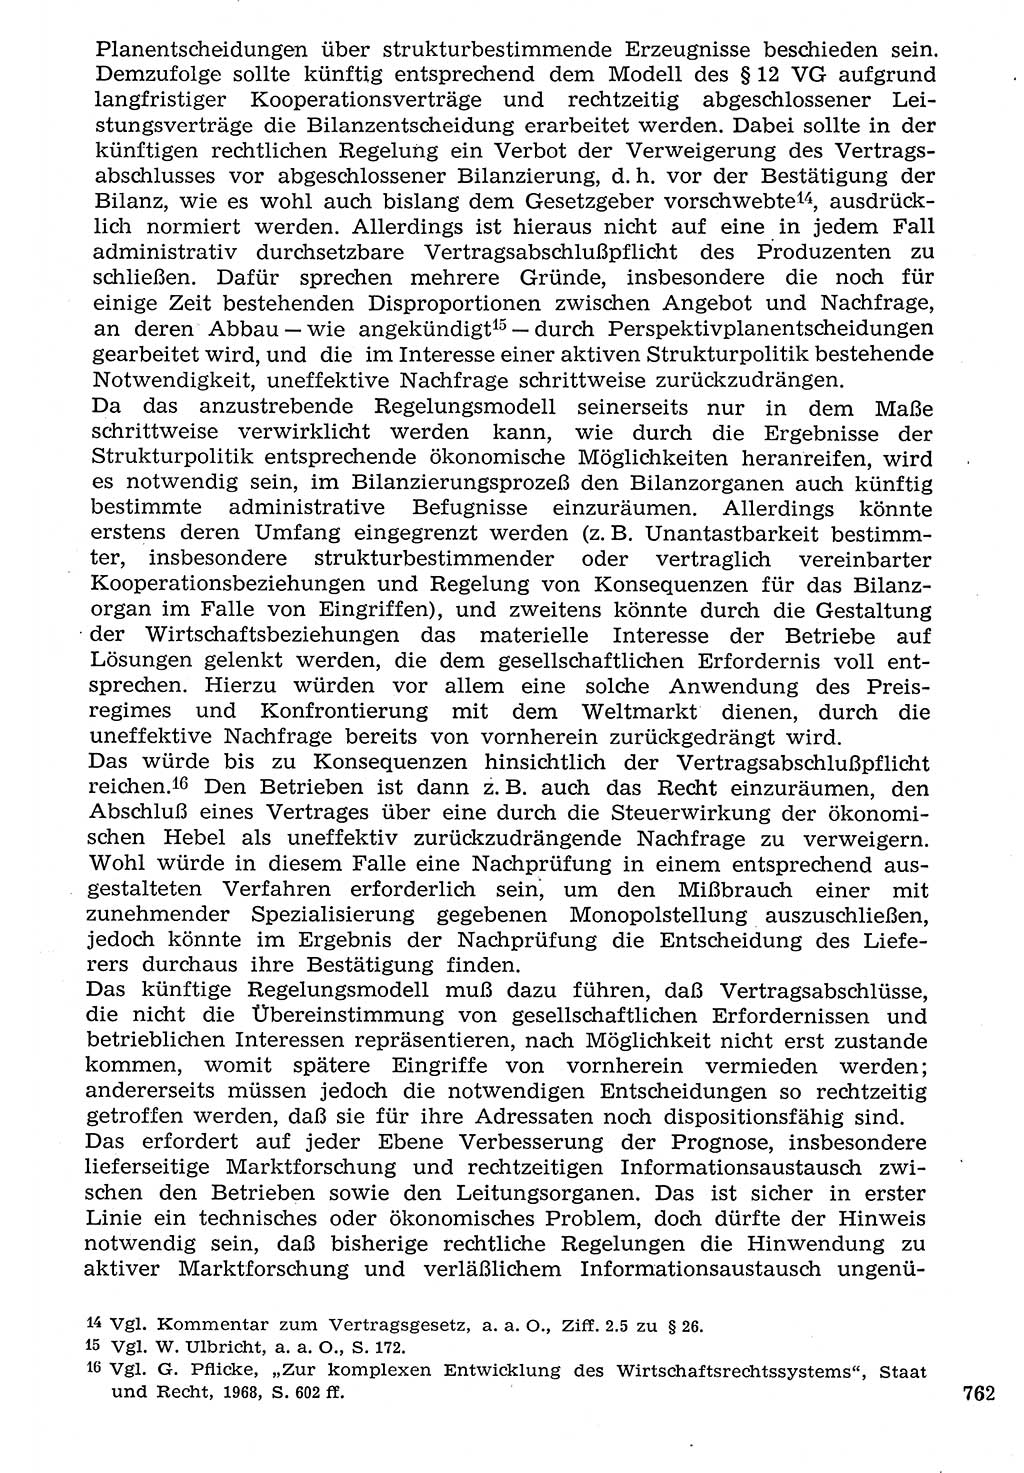 Staat und Recht (StuR), 17. Jahrgang [Deutsche Demokratische Republik (DDR)] 1968, Seite 762 (StuR DDR 1968, S. 762)